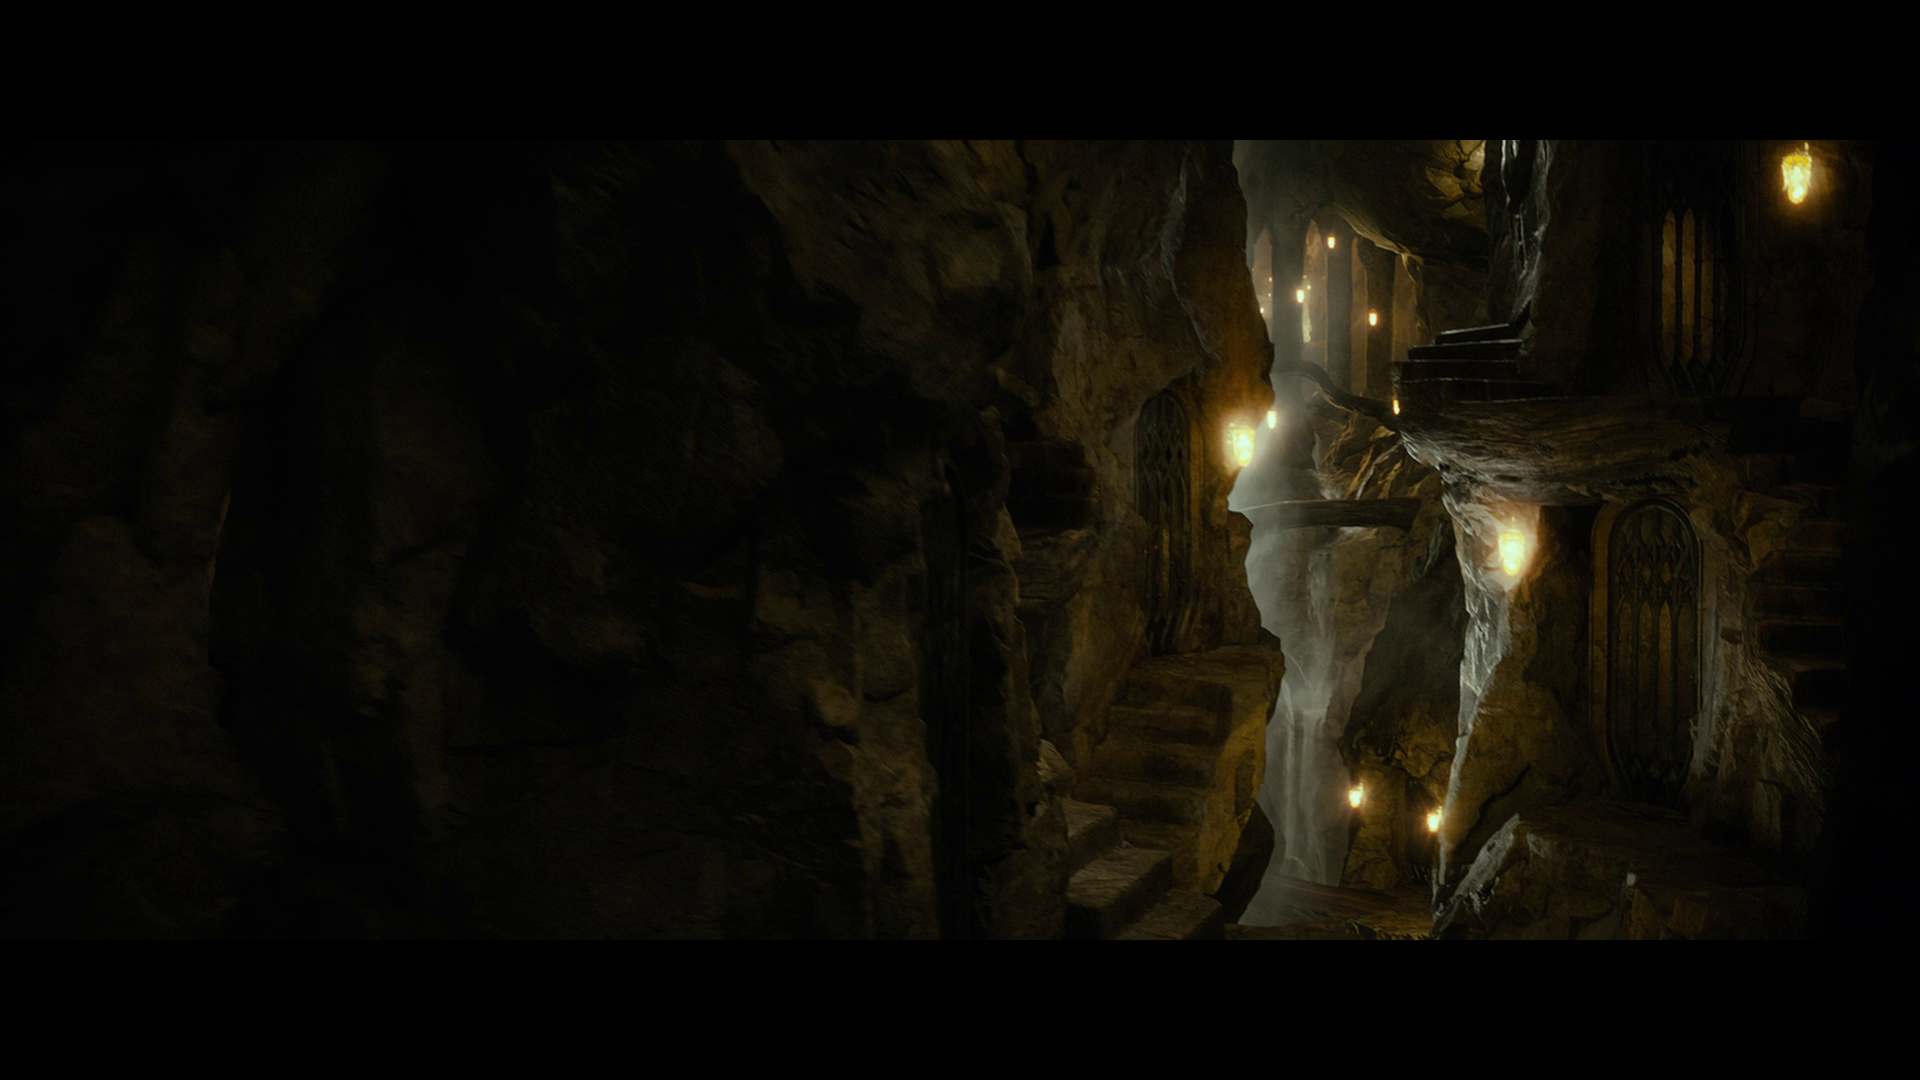 [霍比特人2].The.Hobbit.The.Desolation.of.Smaug.2013.EXTENDED.BluRay.1080p.AVC.DTS-HD.MA.7.1-Tay   41.01G- u2 n) A4 b( T-5.png